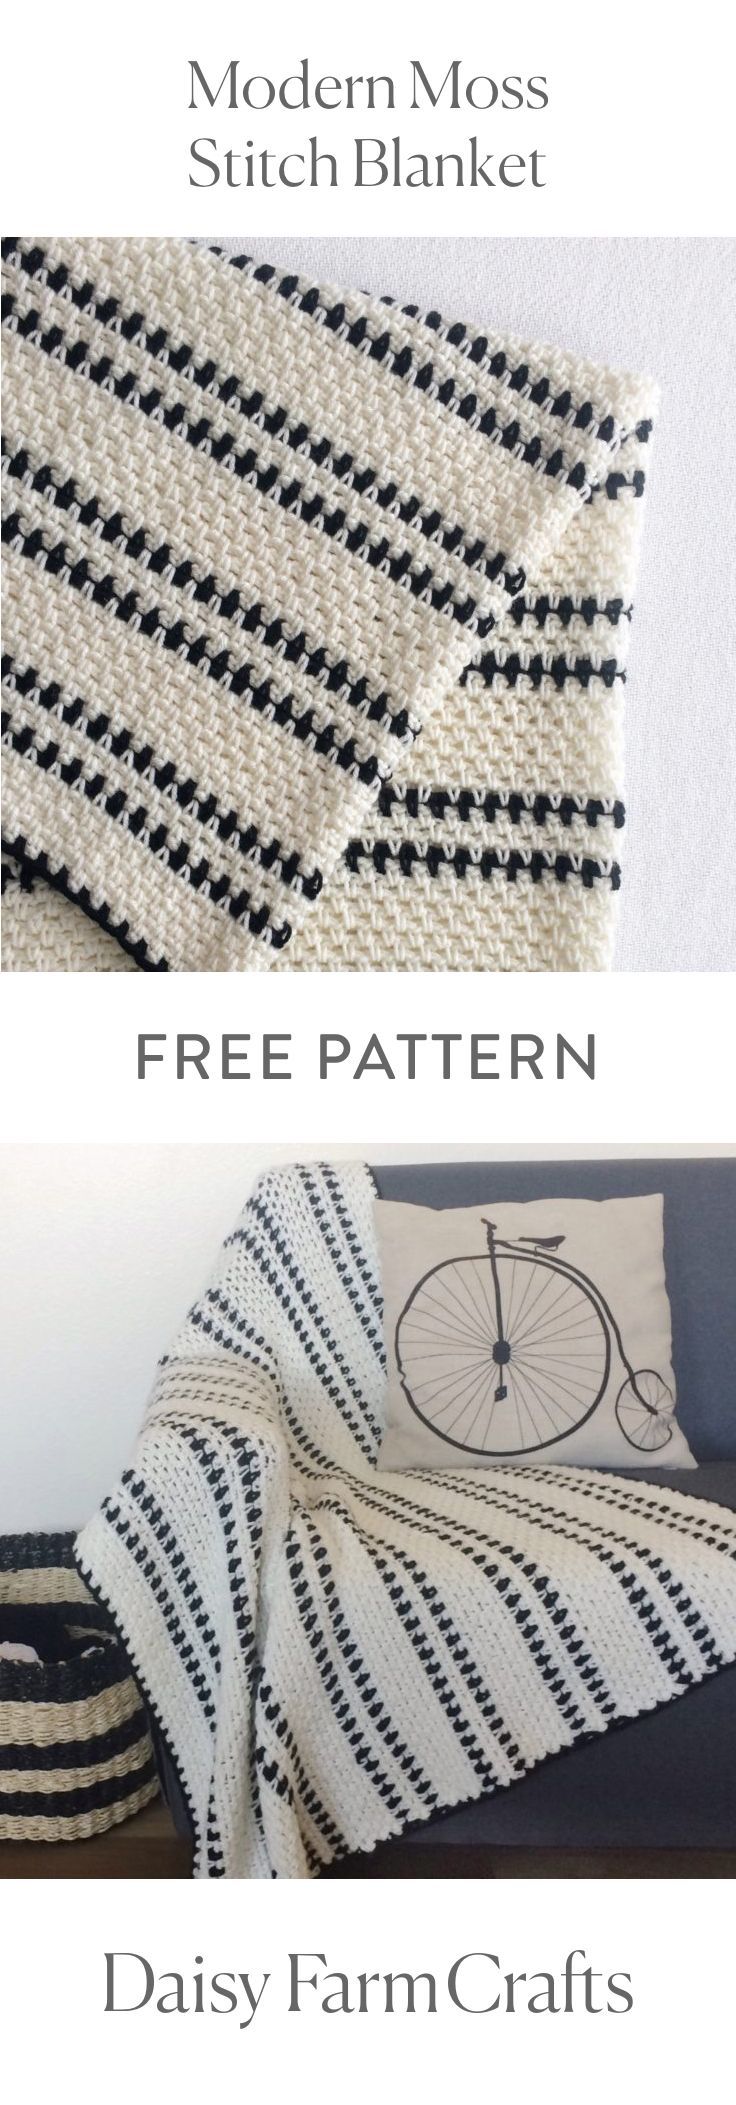 1576230071_293_FREE-PATTERN-Crochet-Modern-Moss-Stitch-Blanket-by-Daisy-Farm.jpg